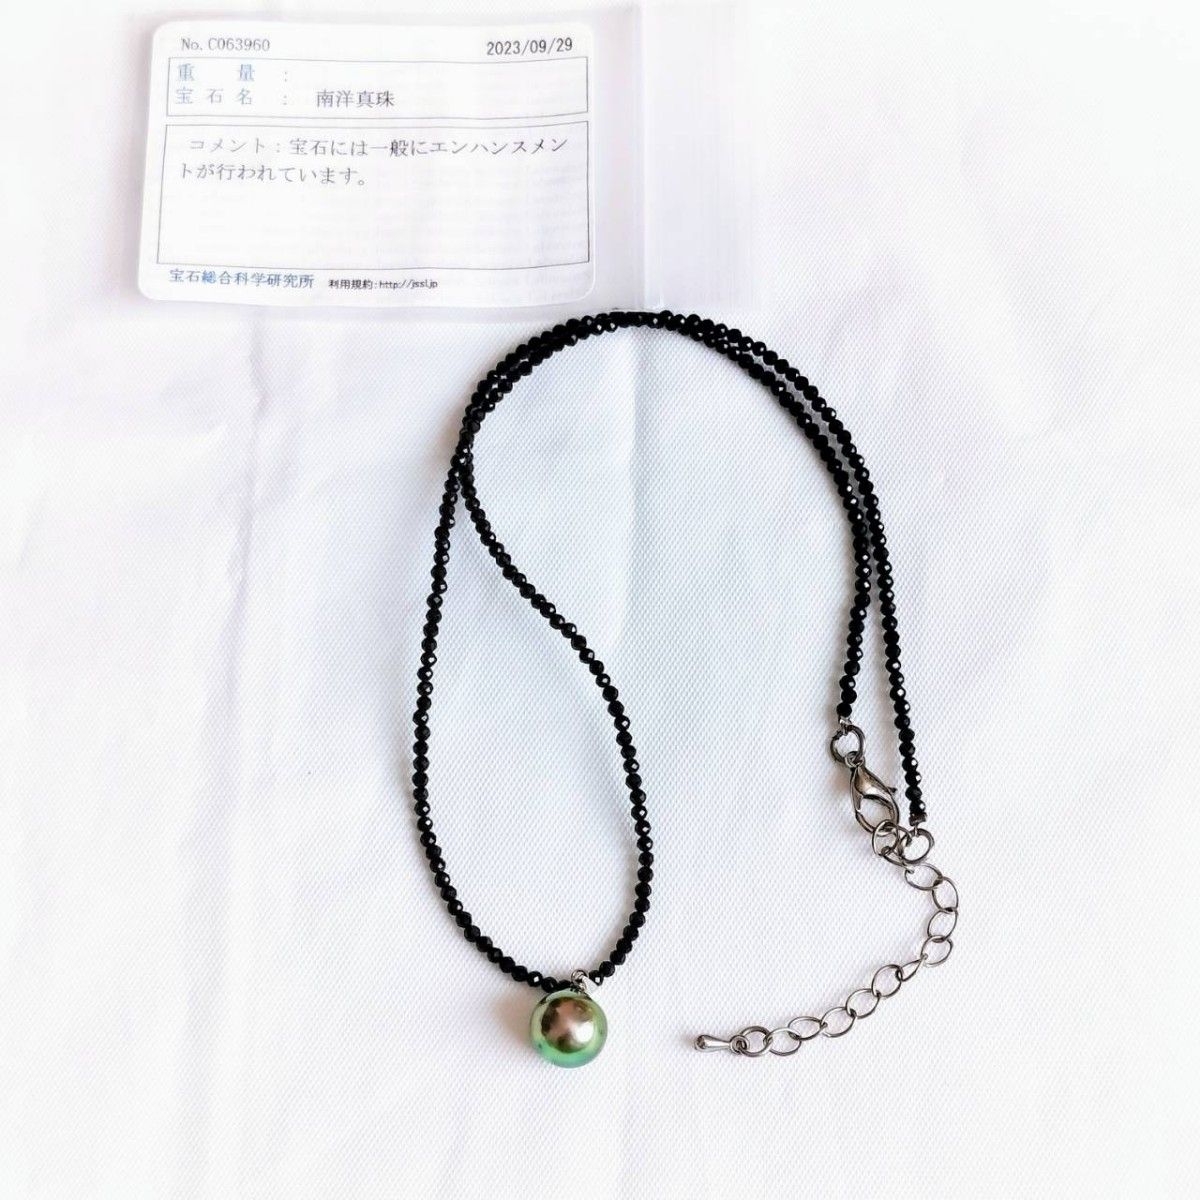 【鑑定書付き】 k14 wg パール 南洋真珠 9.7mm 色石 ネックレス パワーストーン 真珠 天然石 ネックレス ペンダント